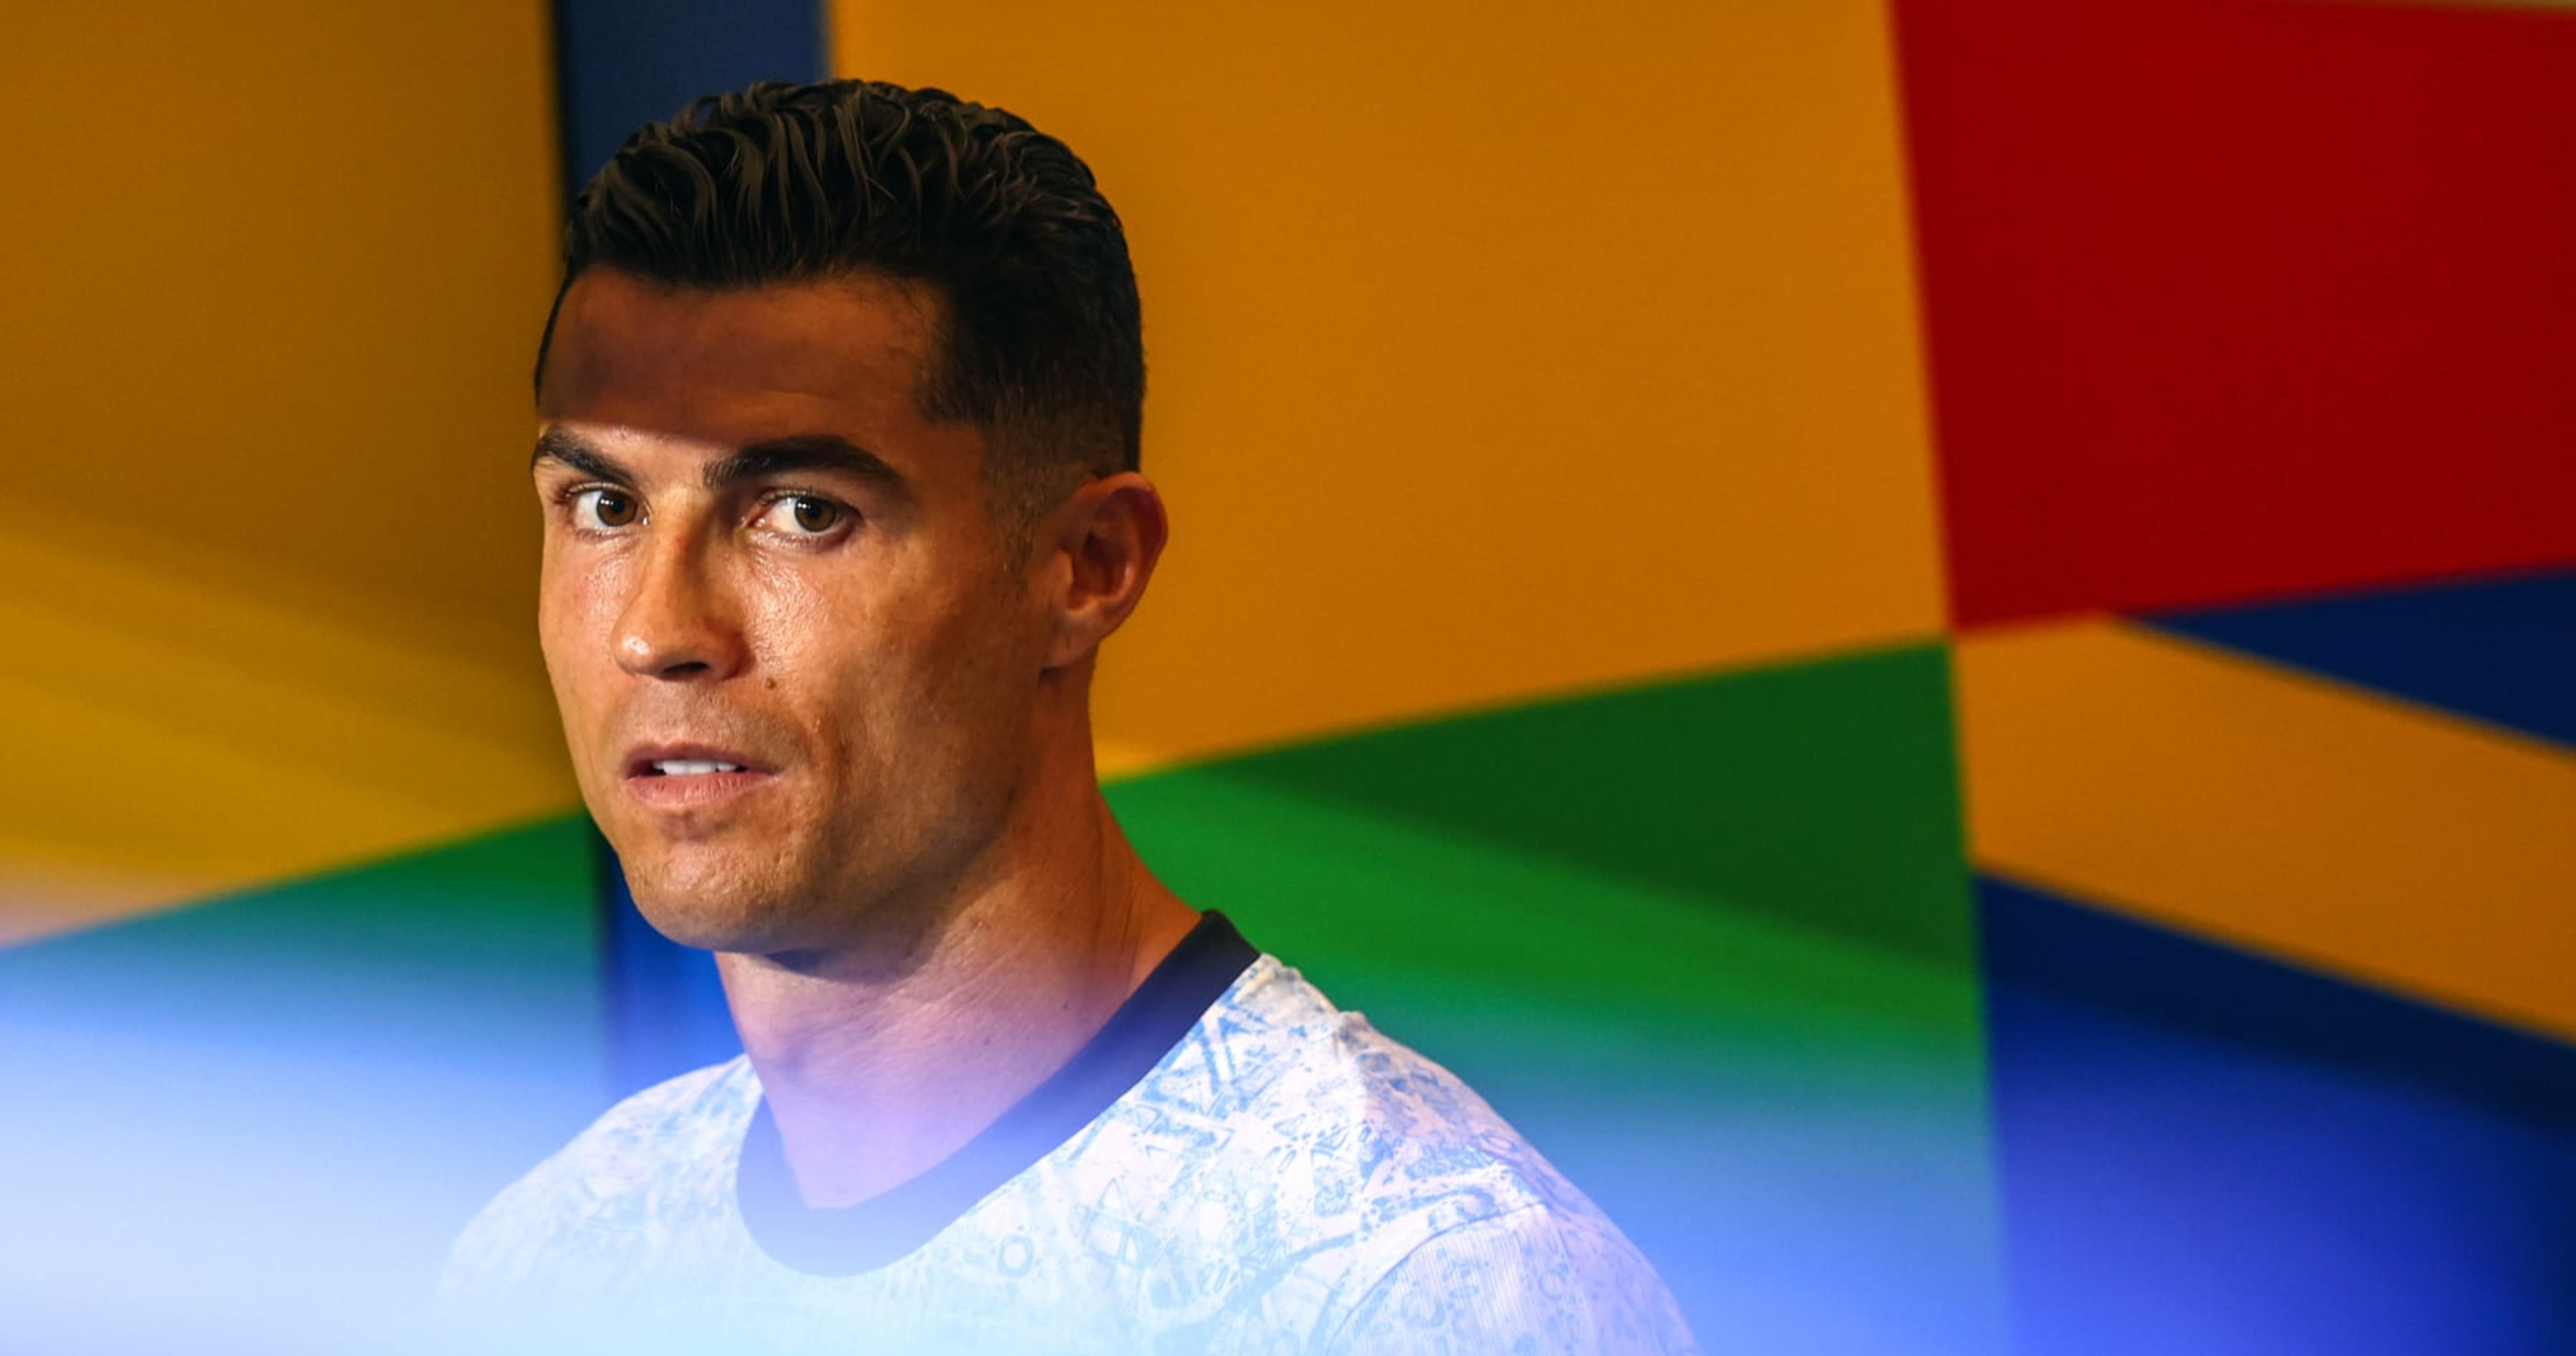 Cristiano Ronaldo évite d’être touché par un fan sautant des tribunes en vidéo à l’Euro 2024 |  Actualités, scores, faits saillants, statistiques et rumeurs